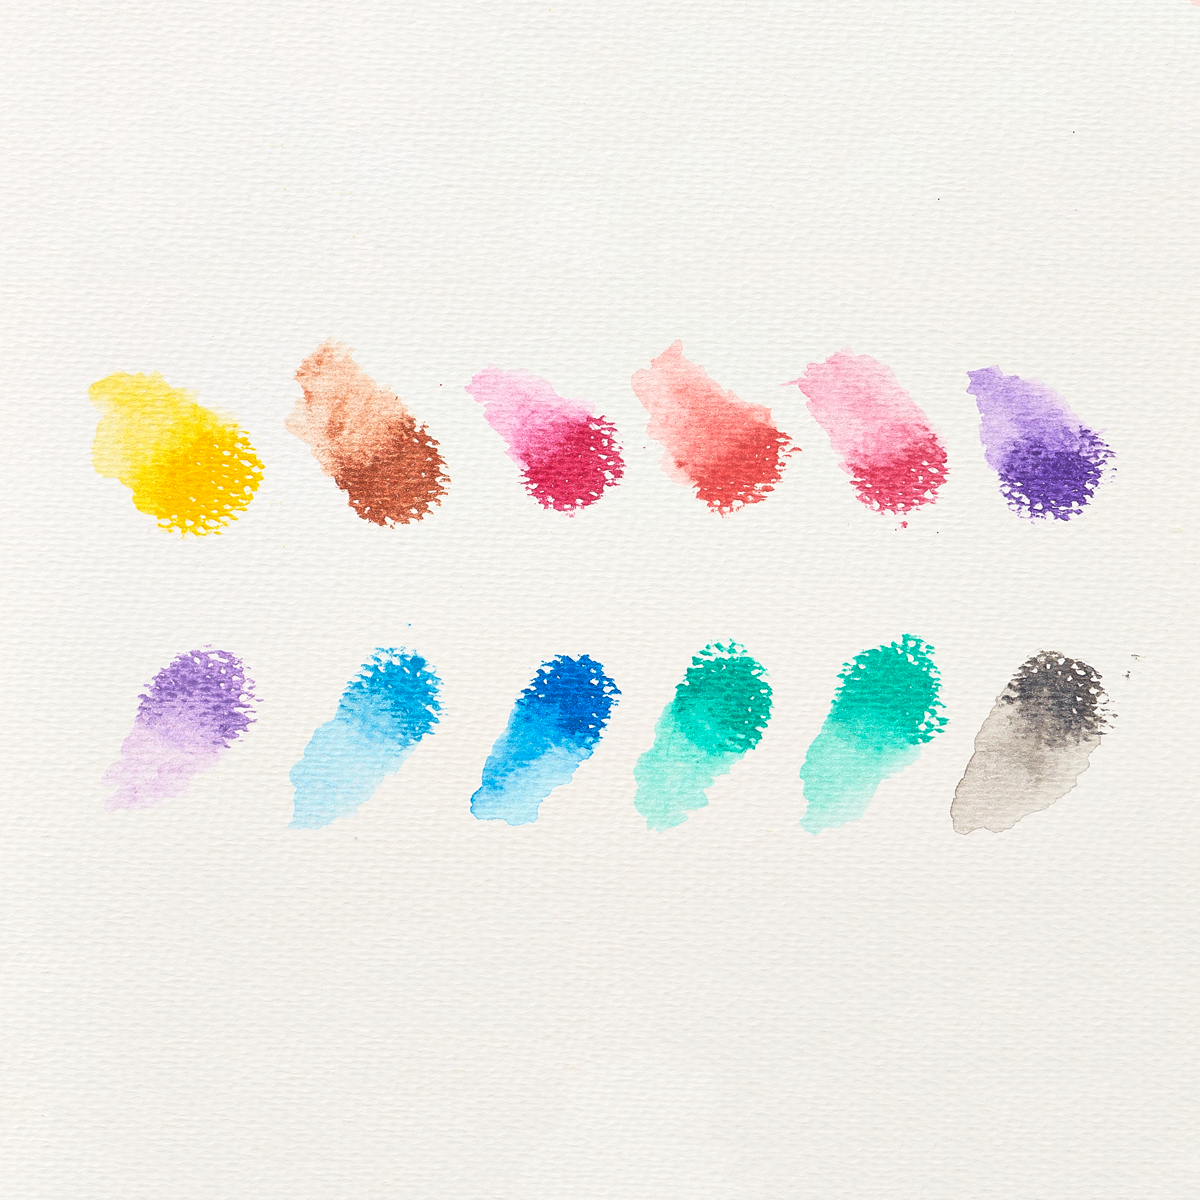 ooly - สีเทียน rainbow sparkle watercolor gel crayons 12 แท่ง  สีเทียนเนื้อเจล เขียนนุ่มลื่นน แถมมีกากเพชร เป็นประกายวิ้งๆ